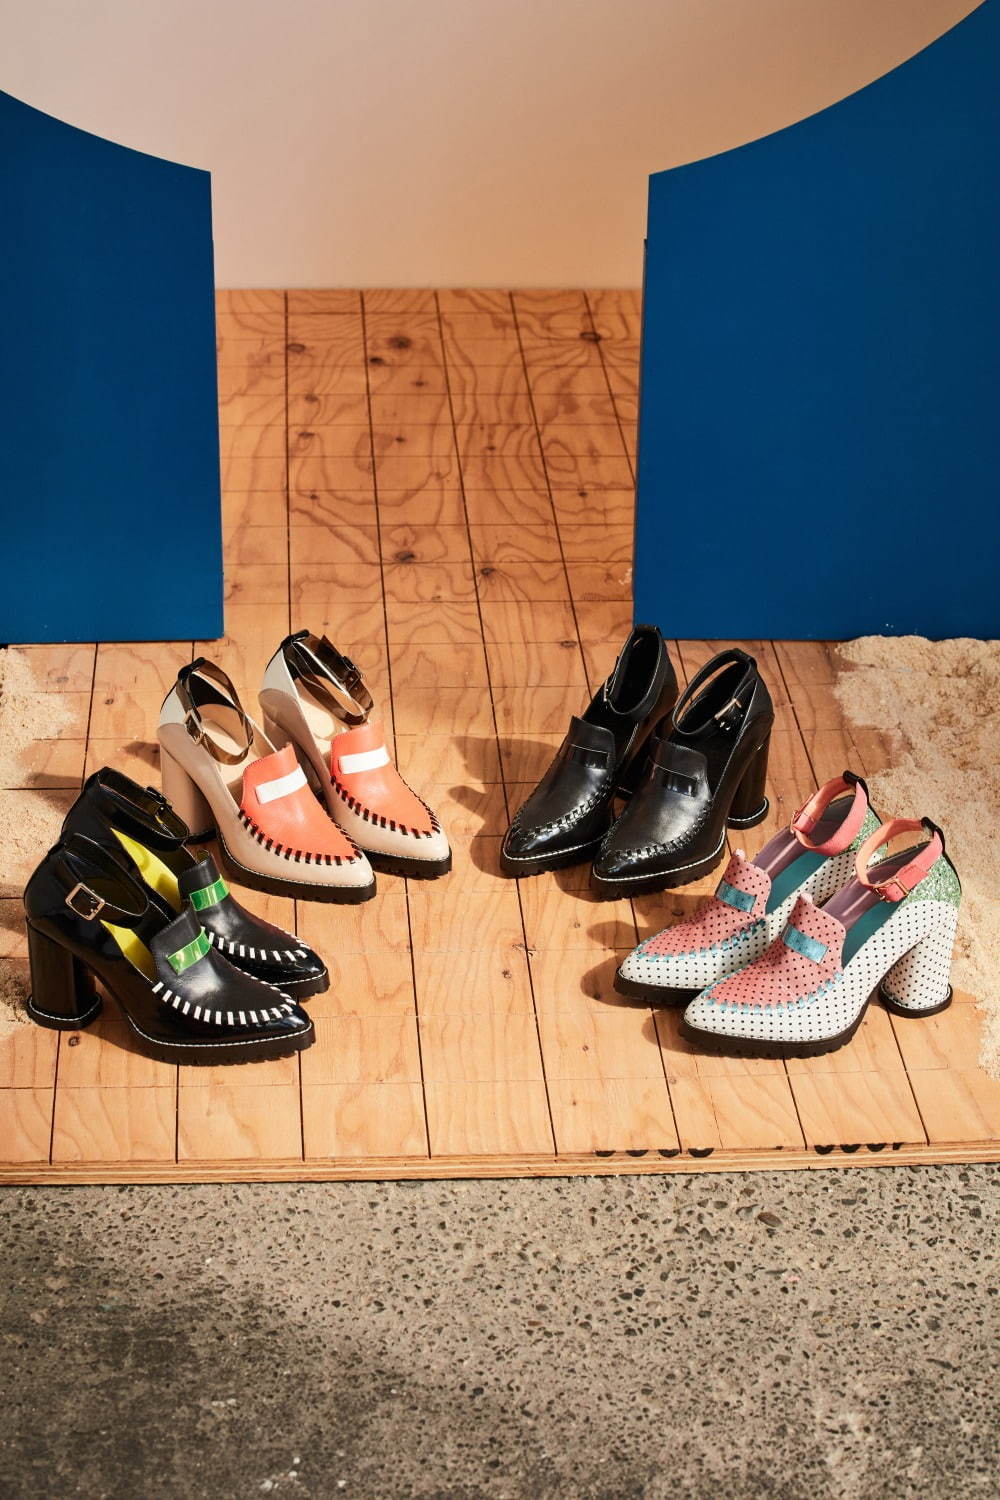 Samsara Step Shoes 全4色 各33,000円＋税